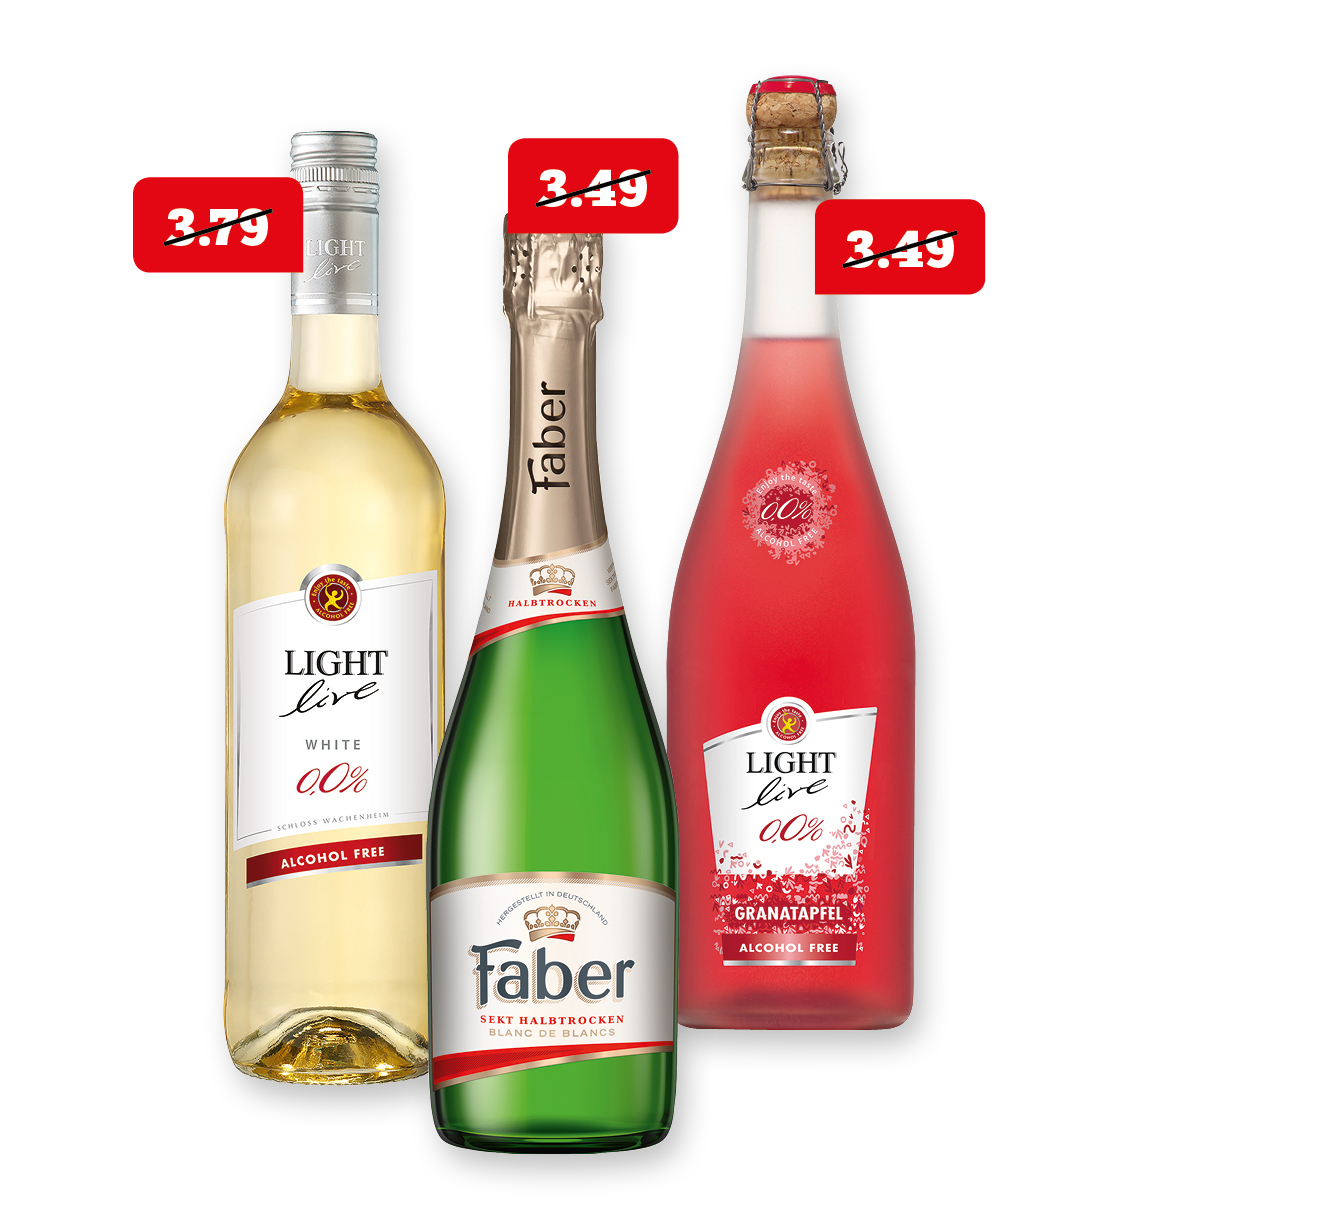 Faber‍ ‍Sekt, Light live alkoholfreier Sekt,Wein, Cocktail oder light live Glühpunsch